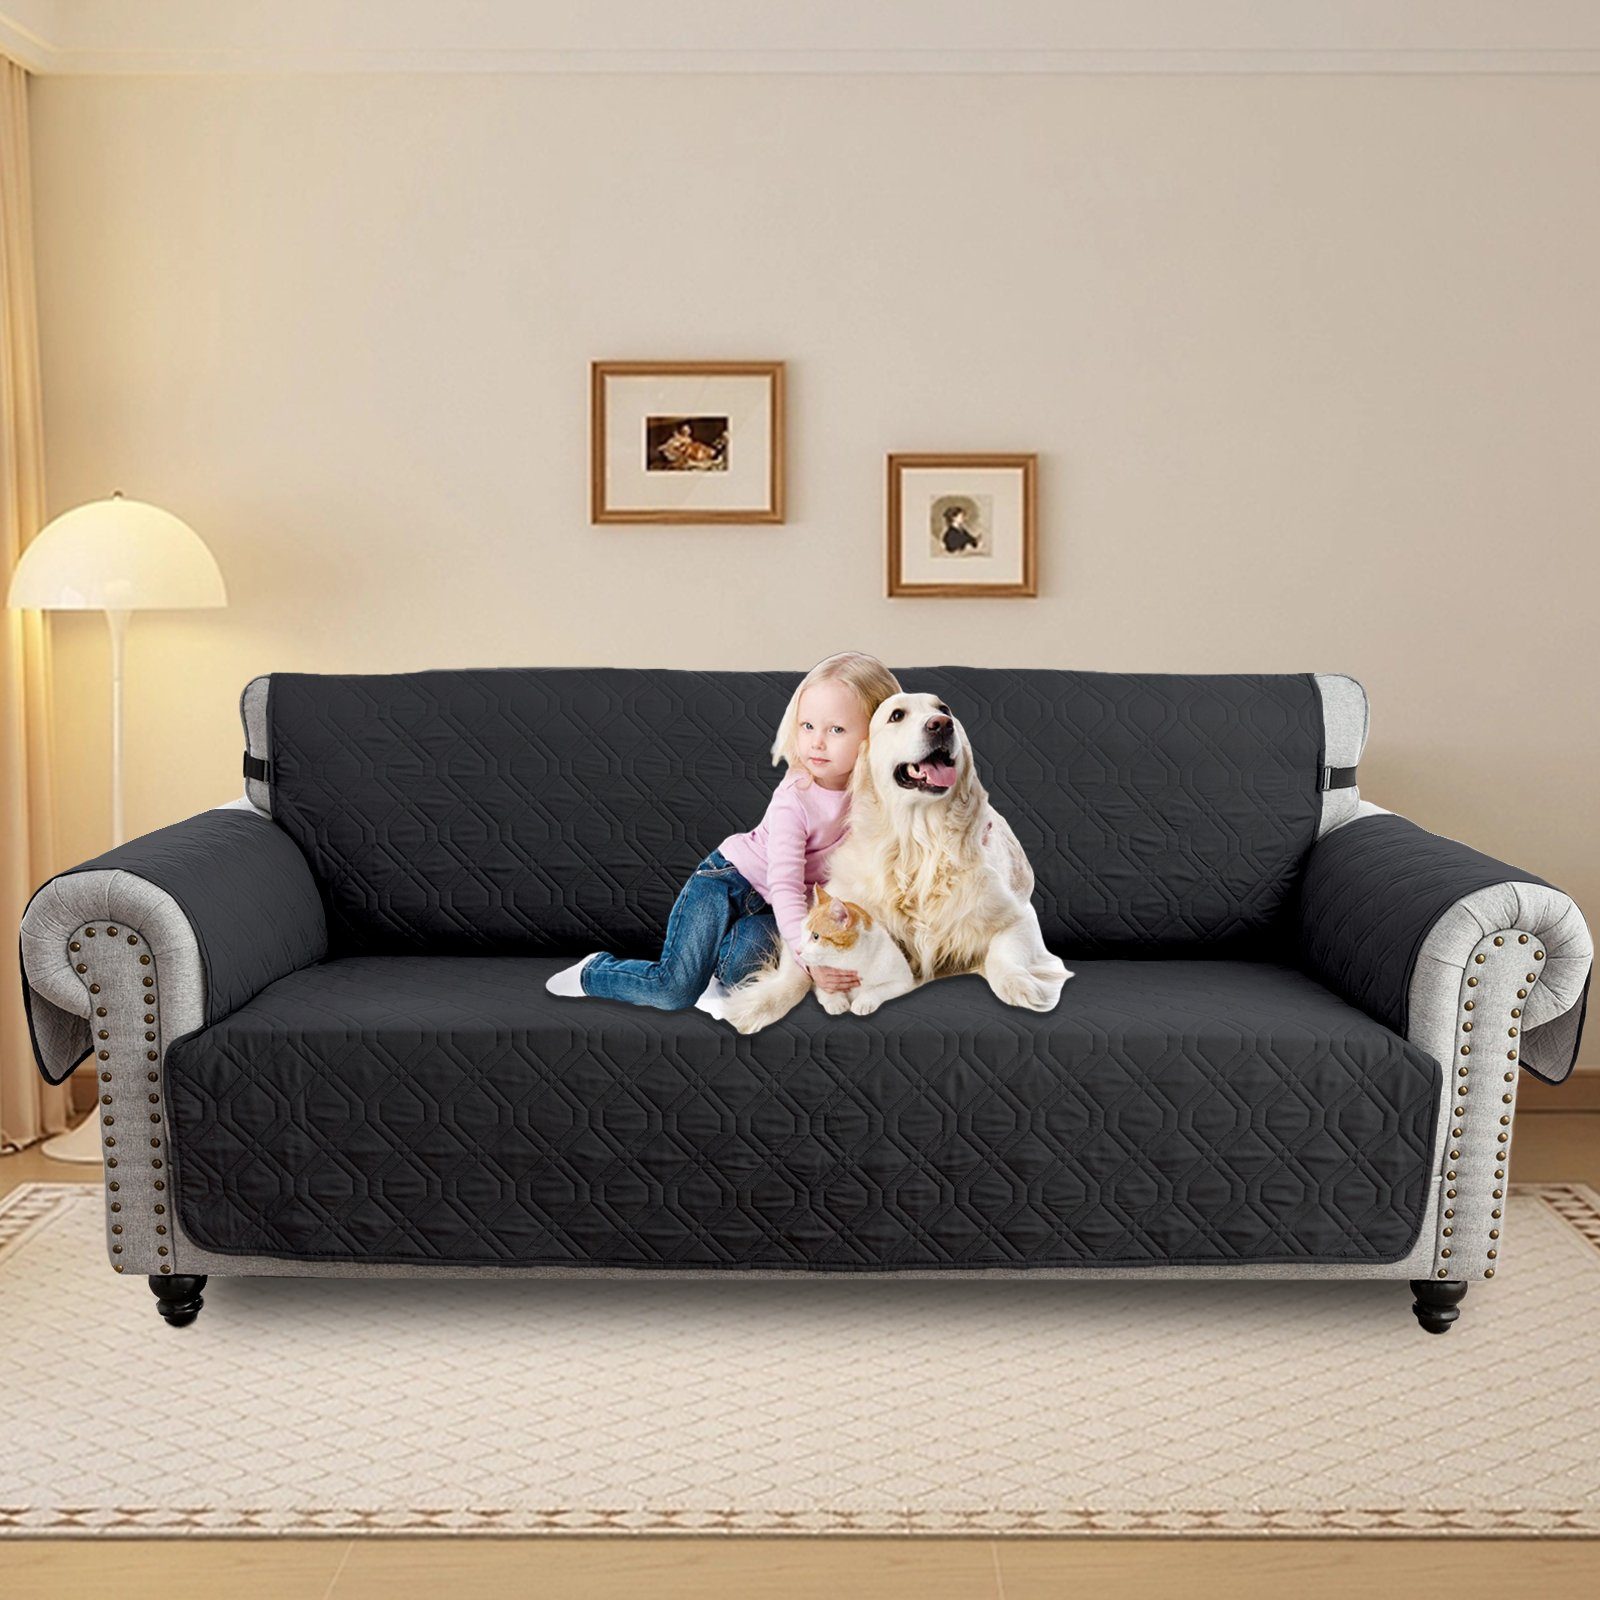 Sofabezug Wasserdicht Gesteppter Haustier Hunde Couch Anti-Rutsch Schutz 1-3Sitz, Sunicol, Sesselschoner Sesselbezug Sofa Überwurf Armlehnenauflage Schwarz